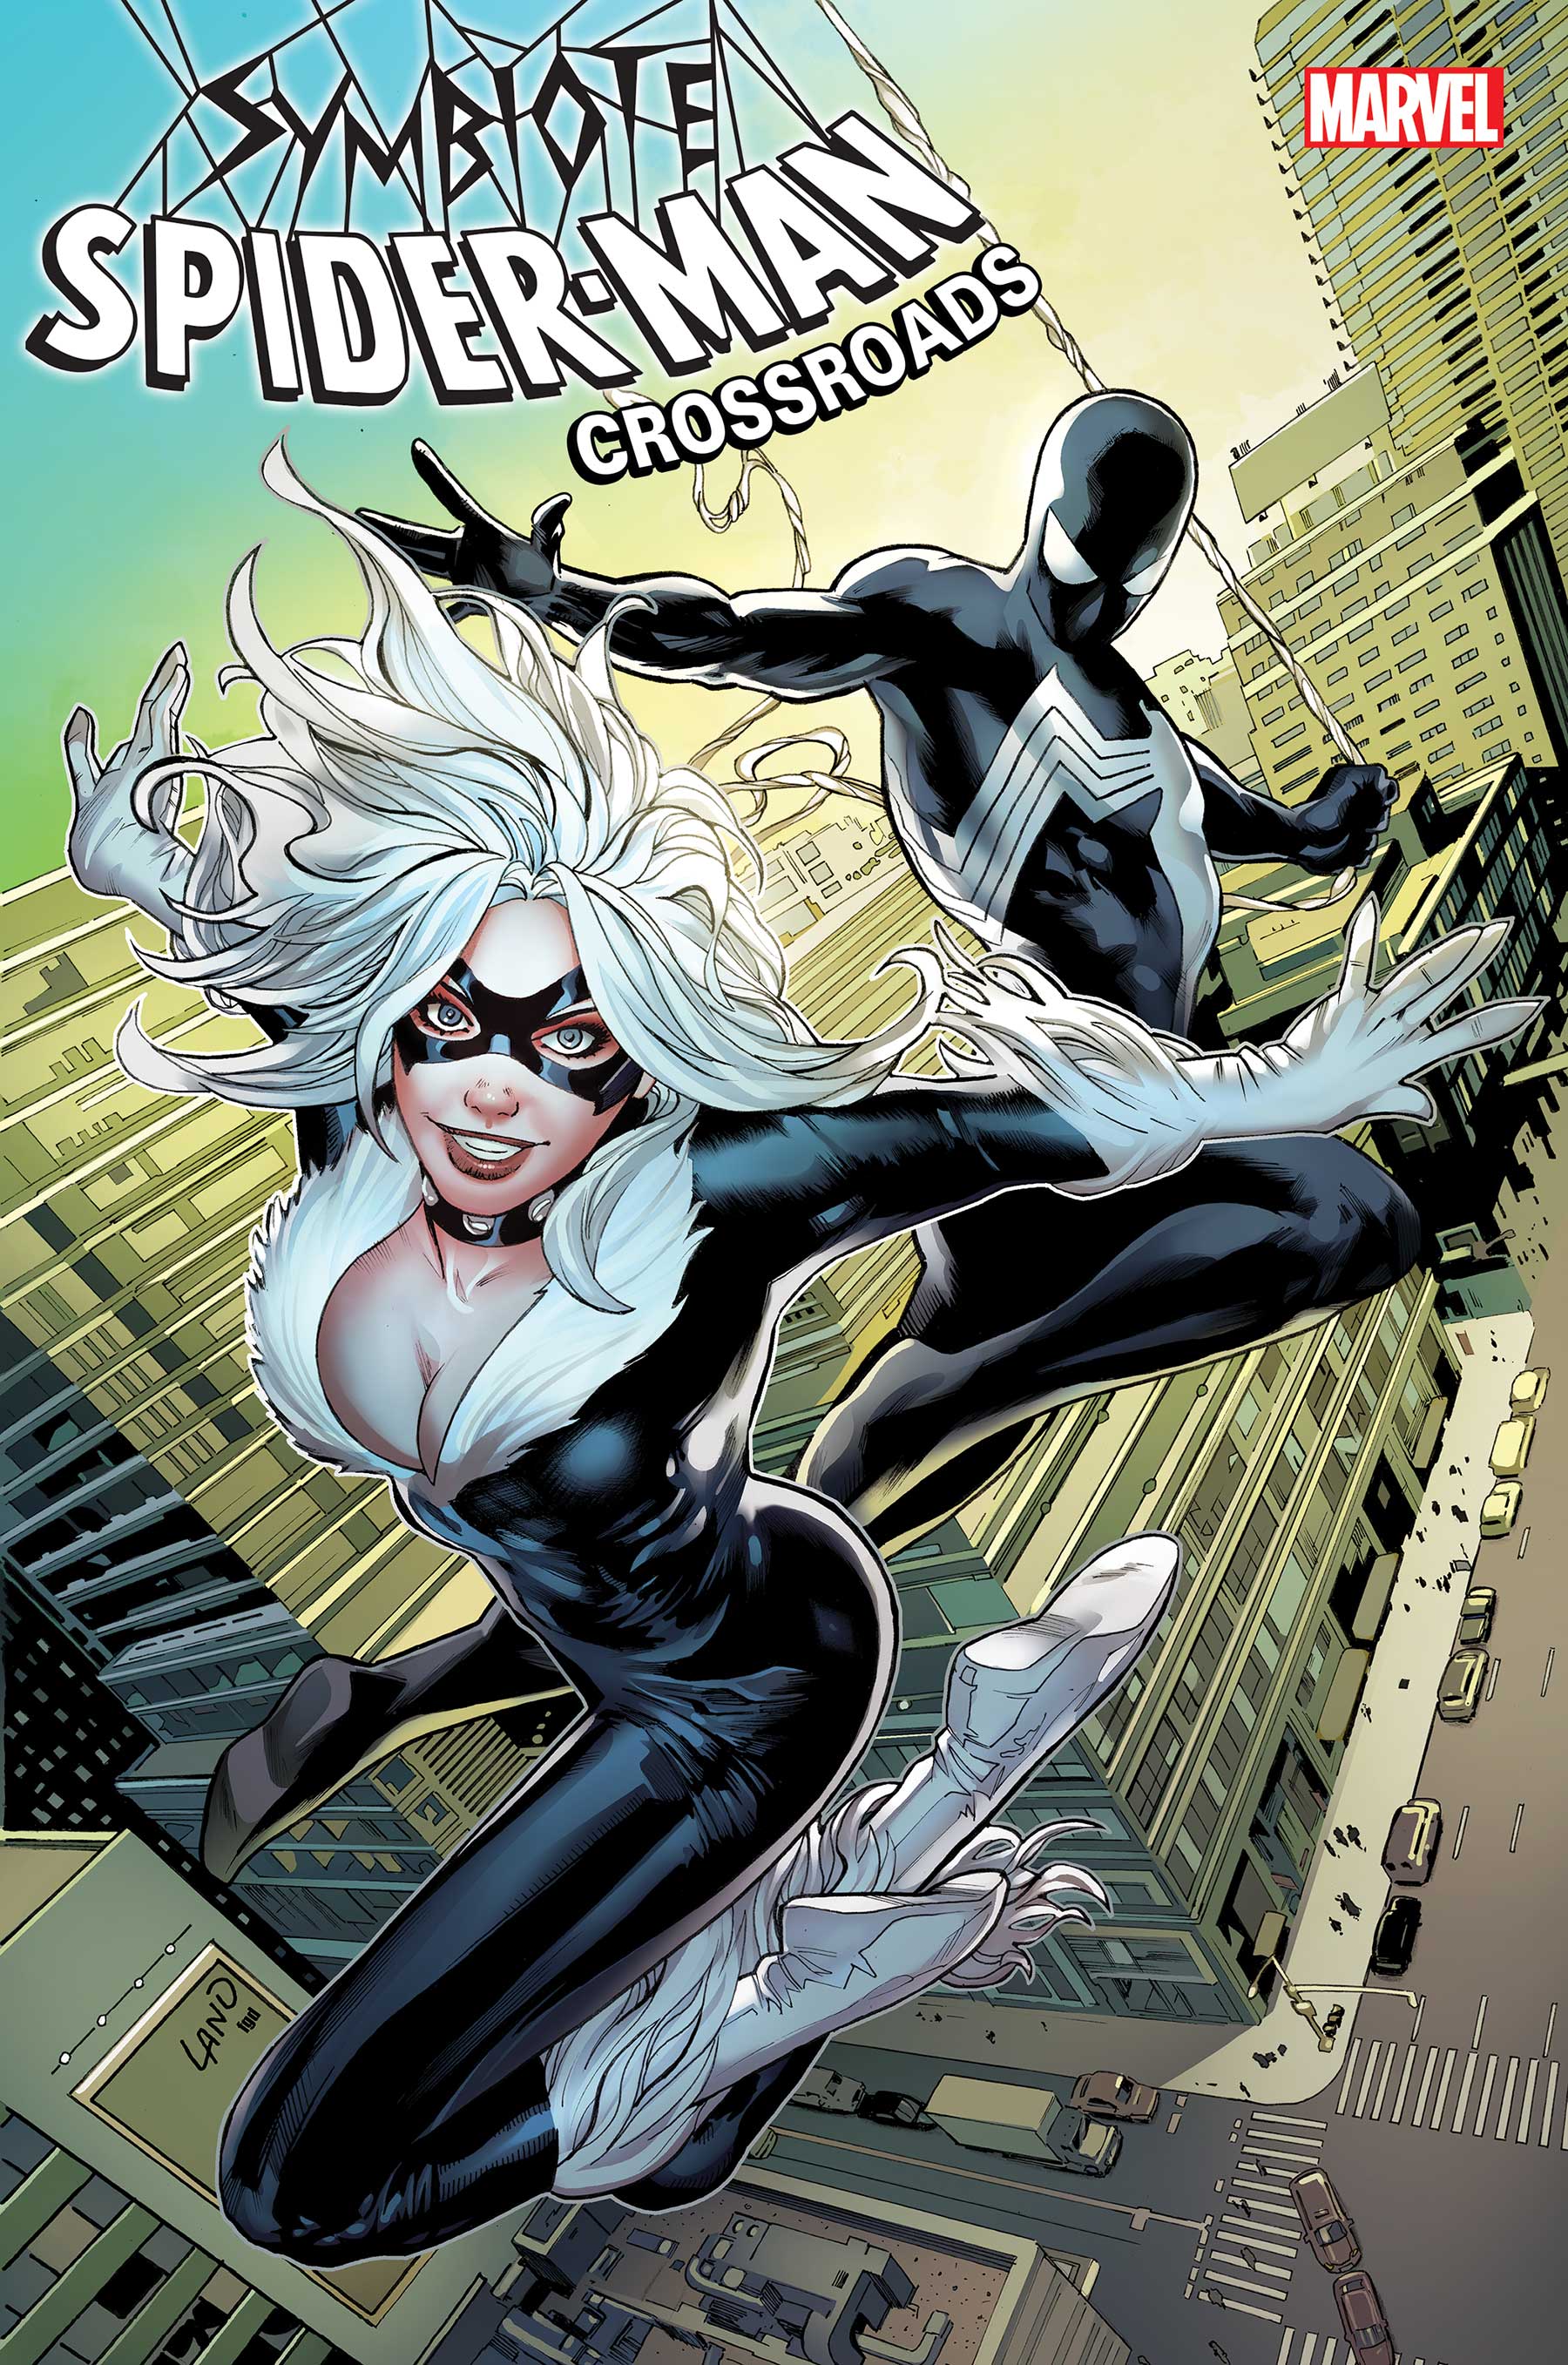 Symbiote Spider-Man: Crossroads (2021) #2